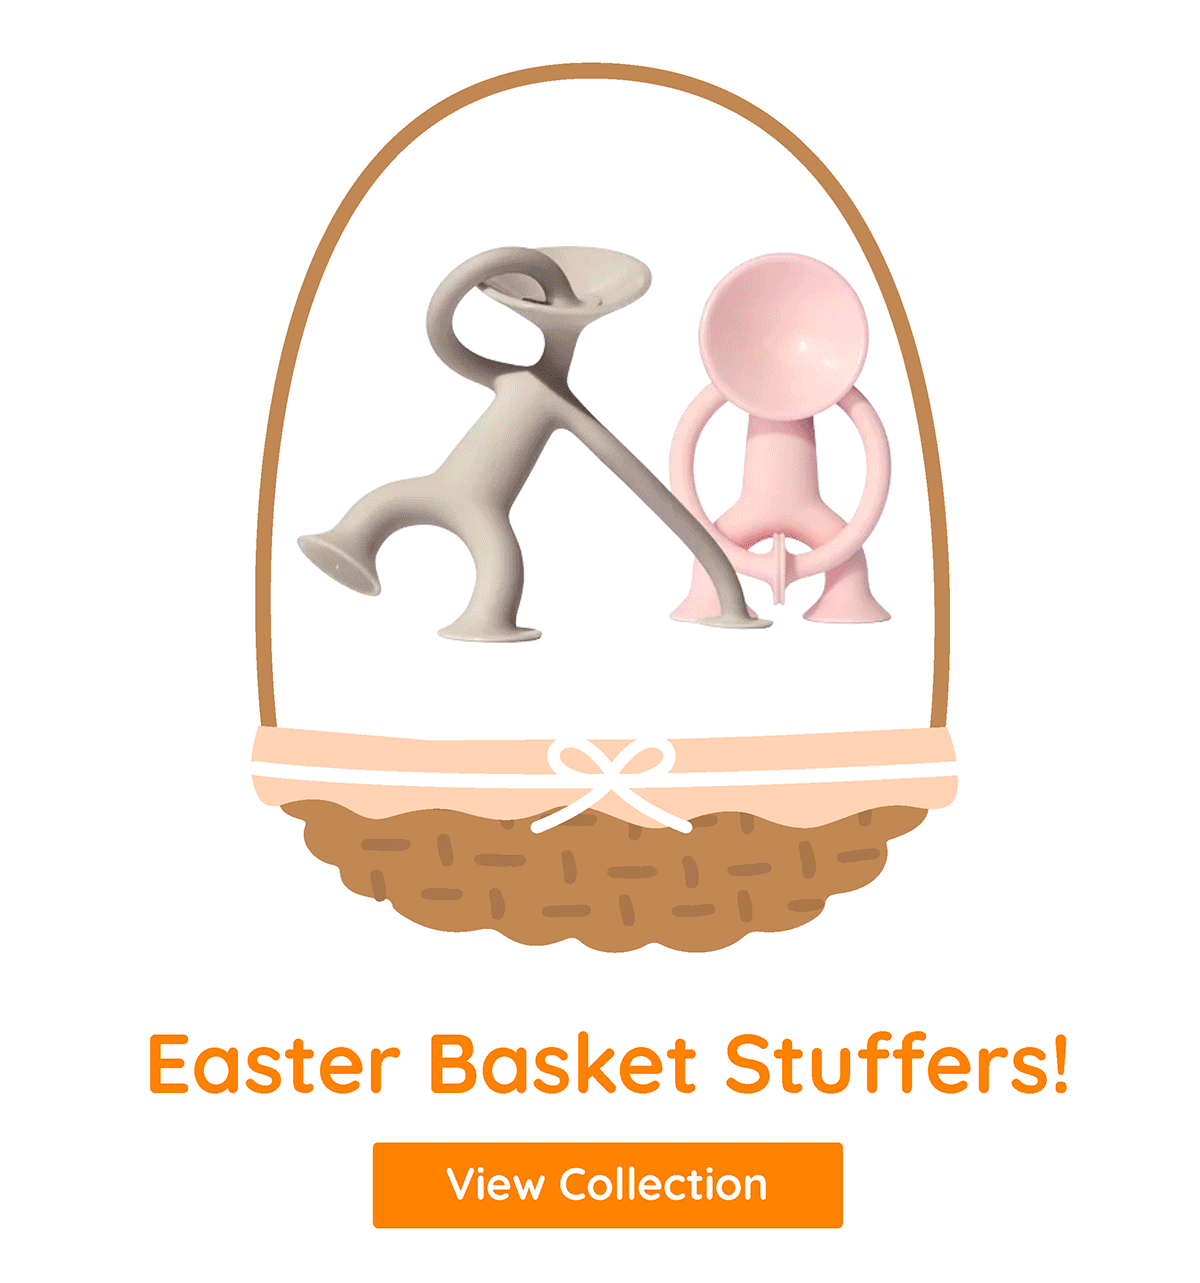 Easter Basket Stuffers!